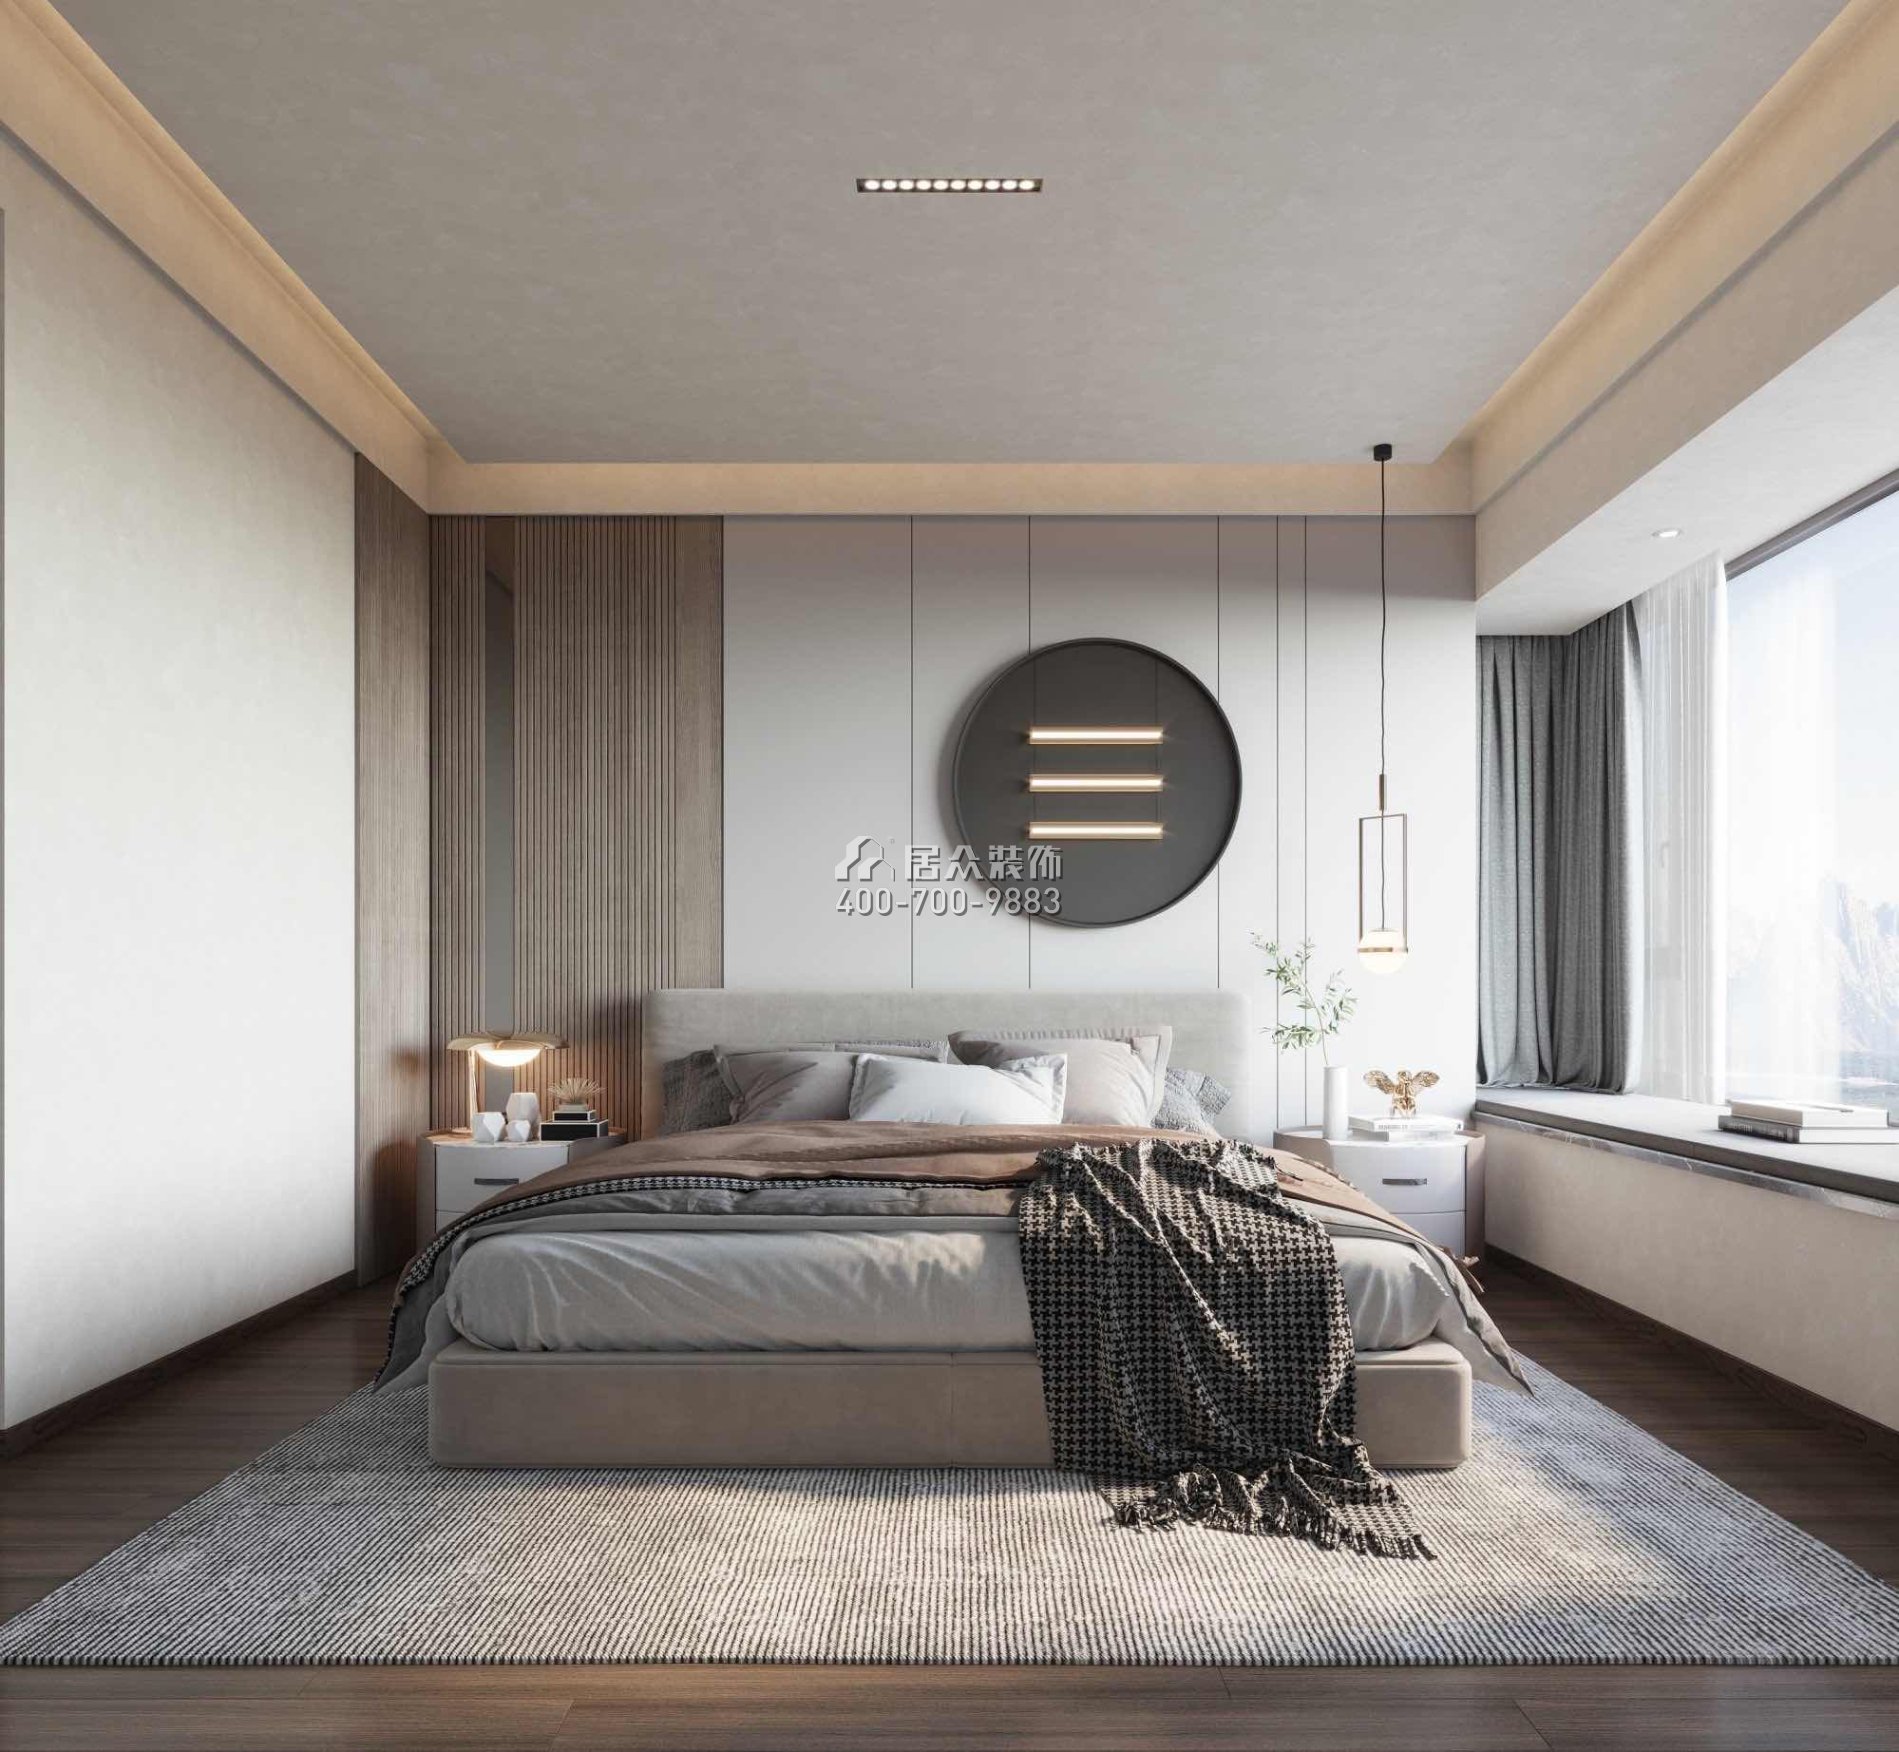 华发绿洋湾160平方米现代简约风格平层户型卧室装修效果图